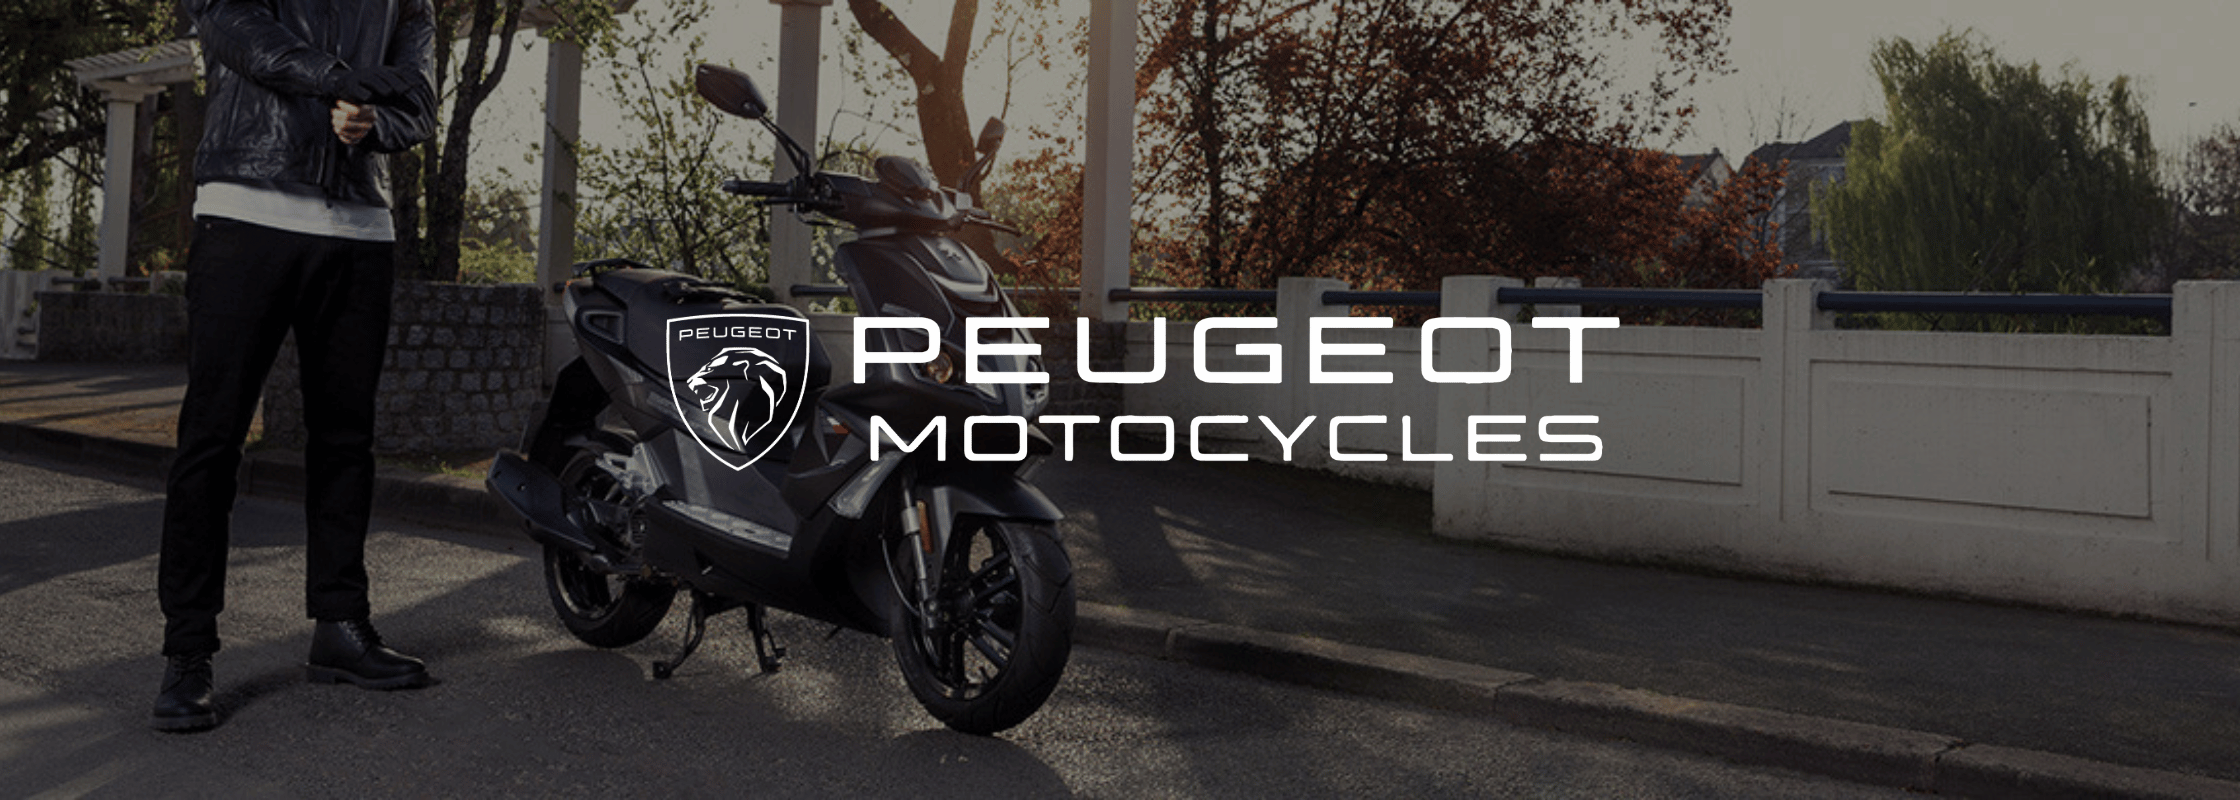 Peugeot Motorcycles Full Range